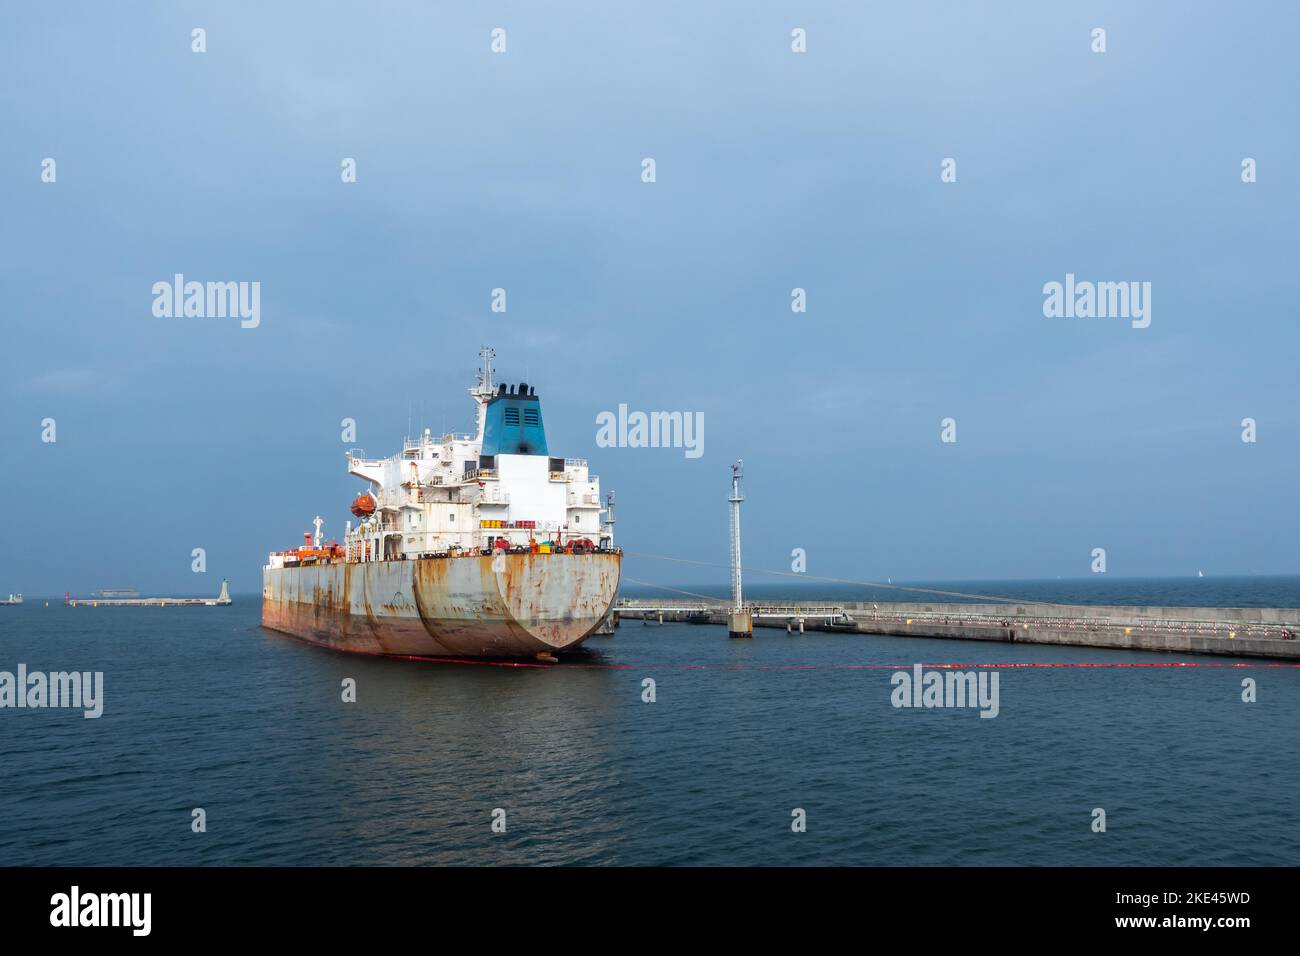 Un pétrolier amarré dans le port pour la durée de l'opération de déchargement de pétrole brut. Photo prise dans des conditions d'éclairage naturel. Banque D'Images